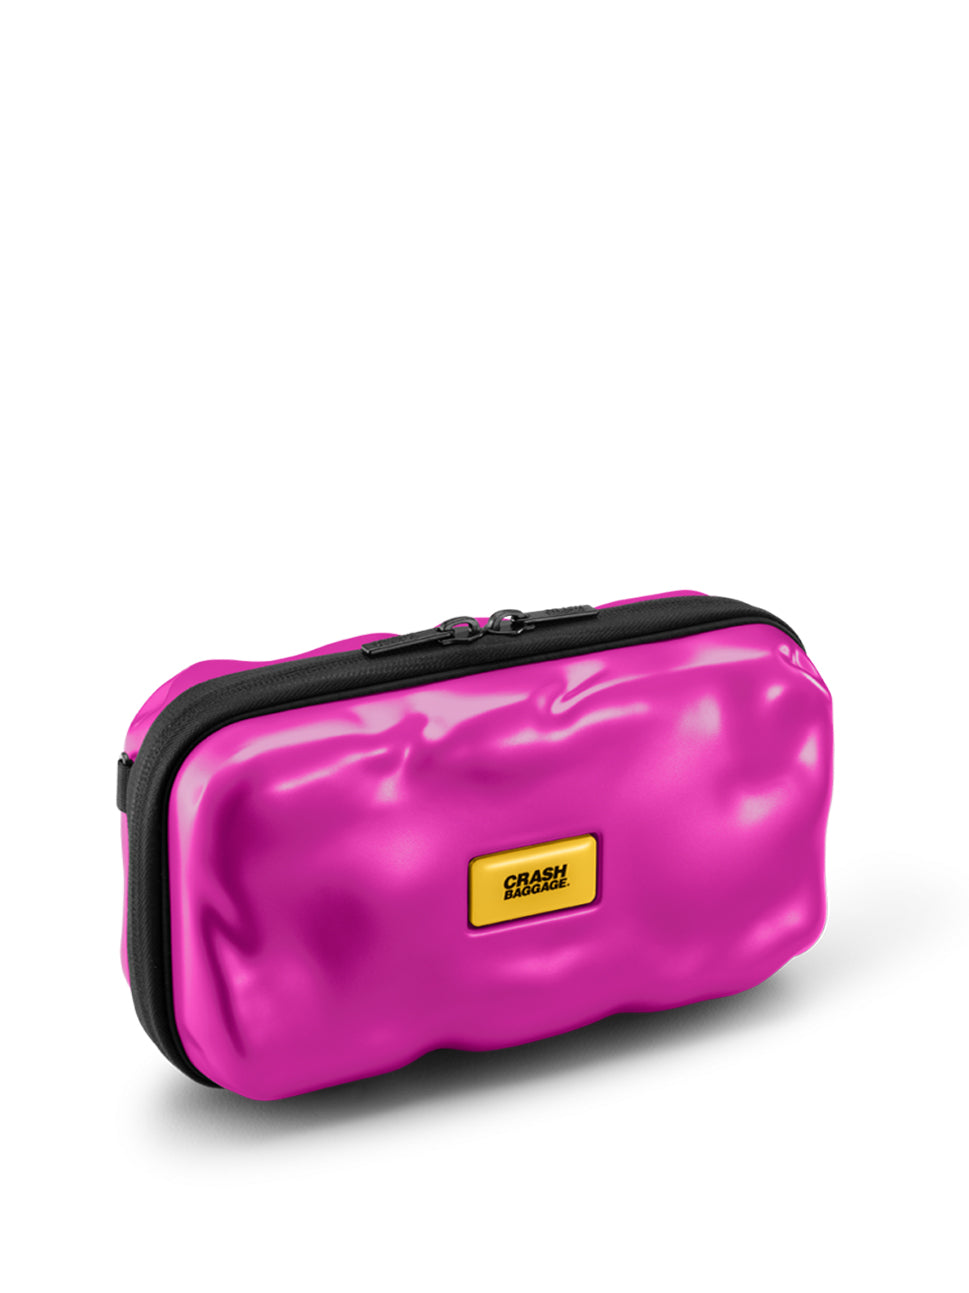 Crash Baggage Mini Icon Pochette Travel Pouch, CB370 029, Fuchsia